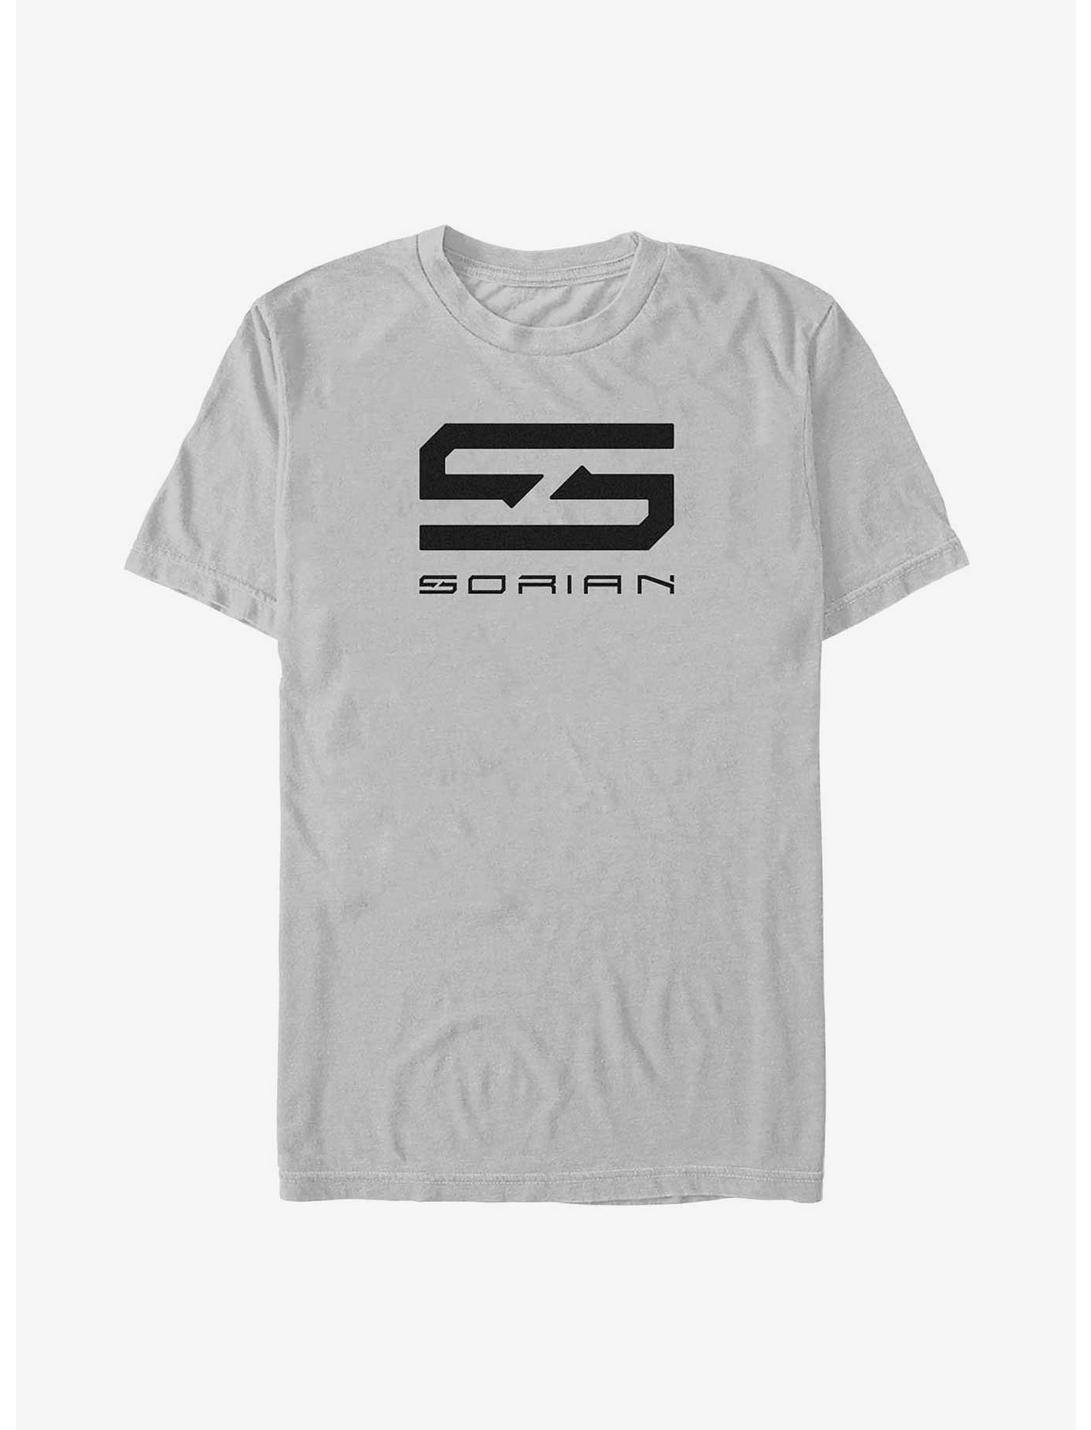 The Adam Project Sorian Technologies Emblem T-Shirt, SILVER, hi-res